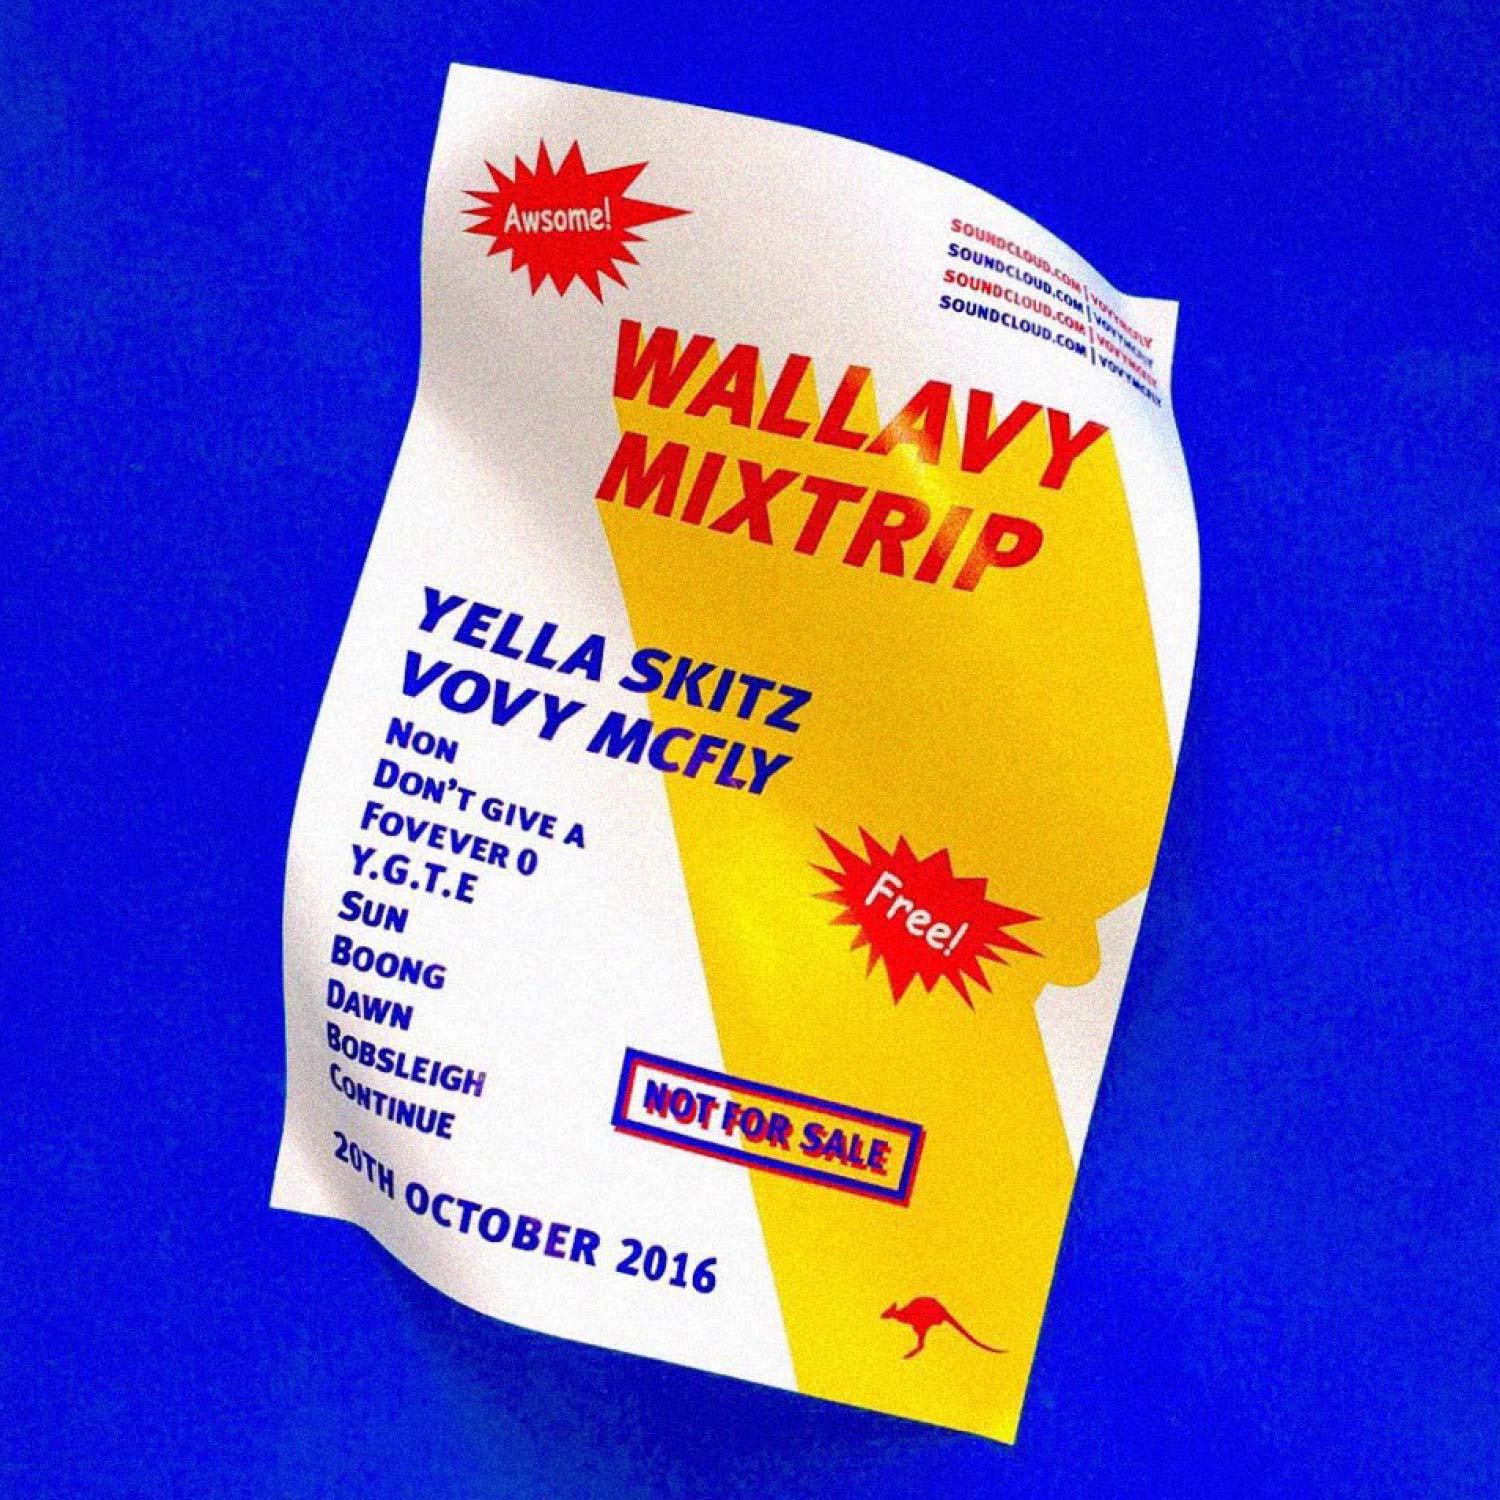 WALLAVY &#039;MIXTRIP&#039;